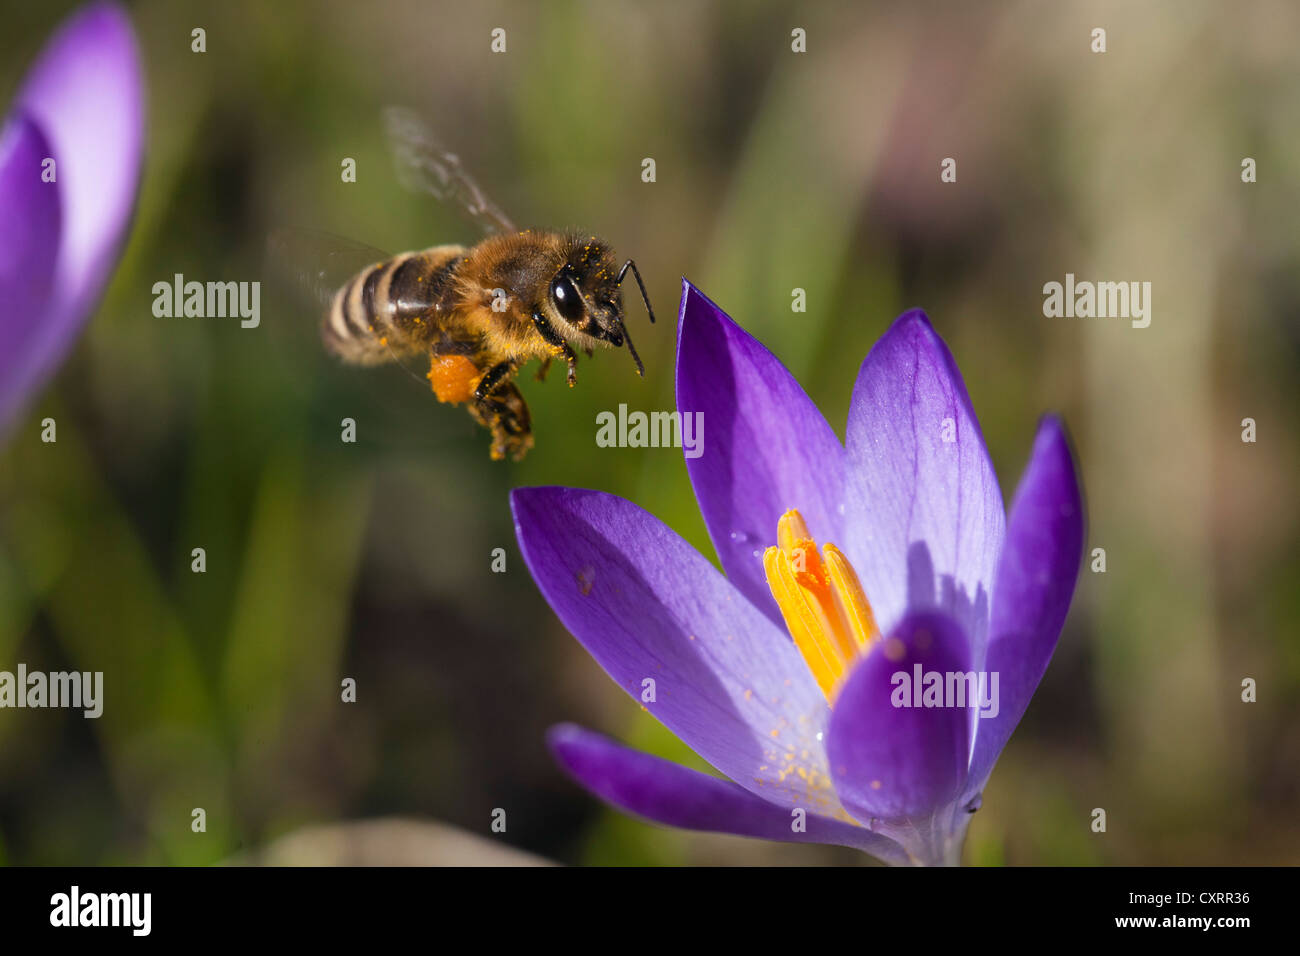 'Abeille à miel (Apis mellifera) perché sur une fleur de crocus dans un jardin, Bavaria, Germany, Europe Banque D'Images